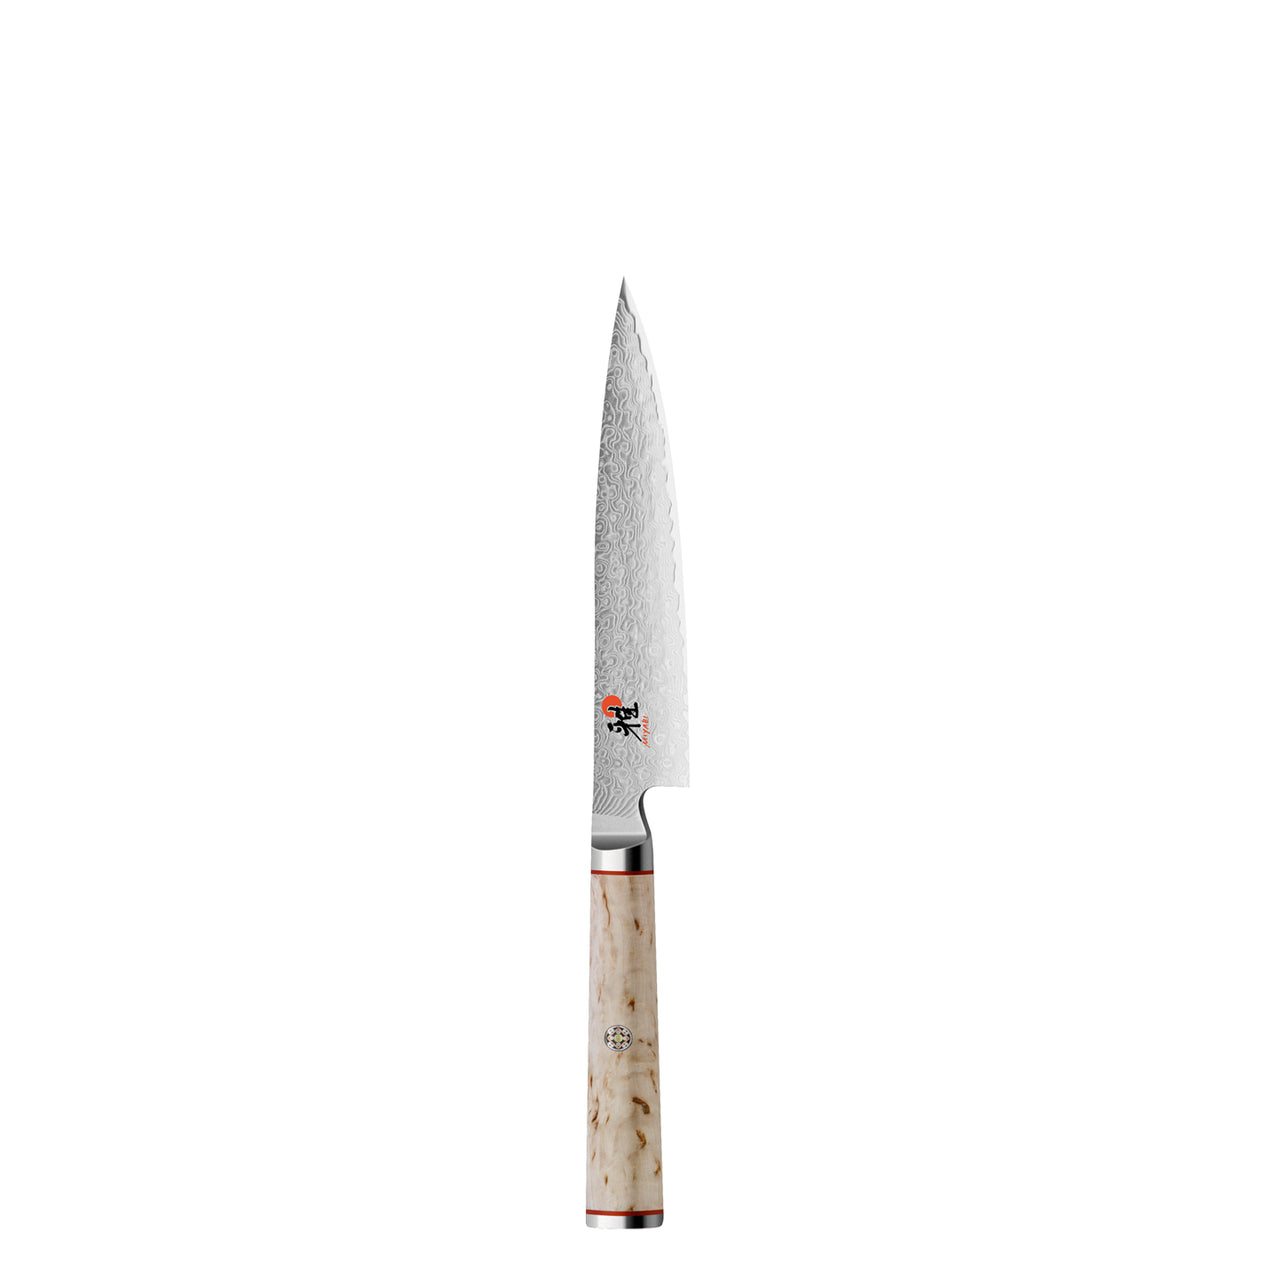 Miyabi 5000 MCD 10 Knife and Kai Block Set / Oak Block